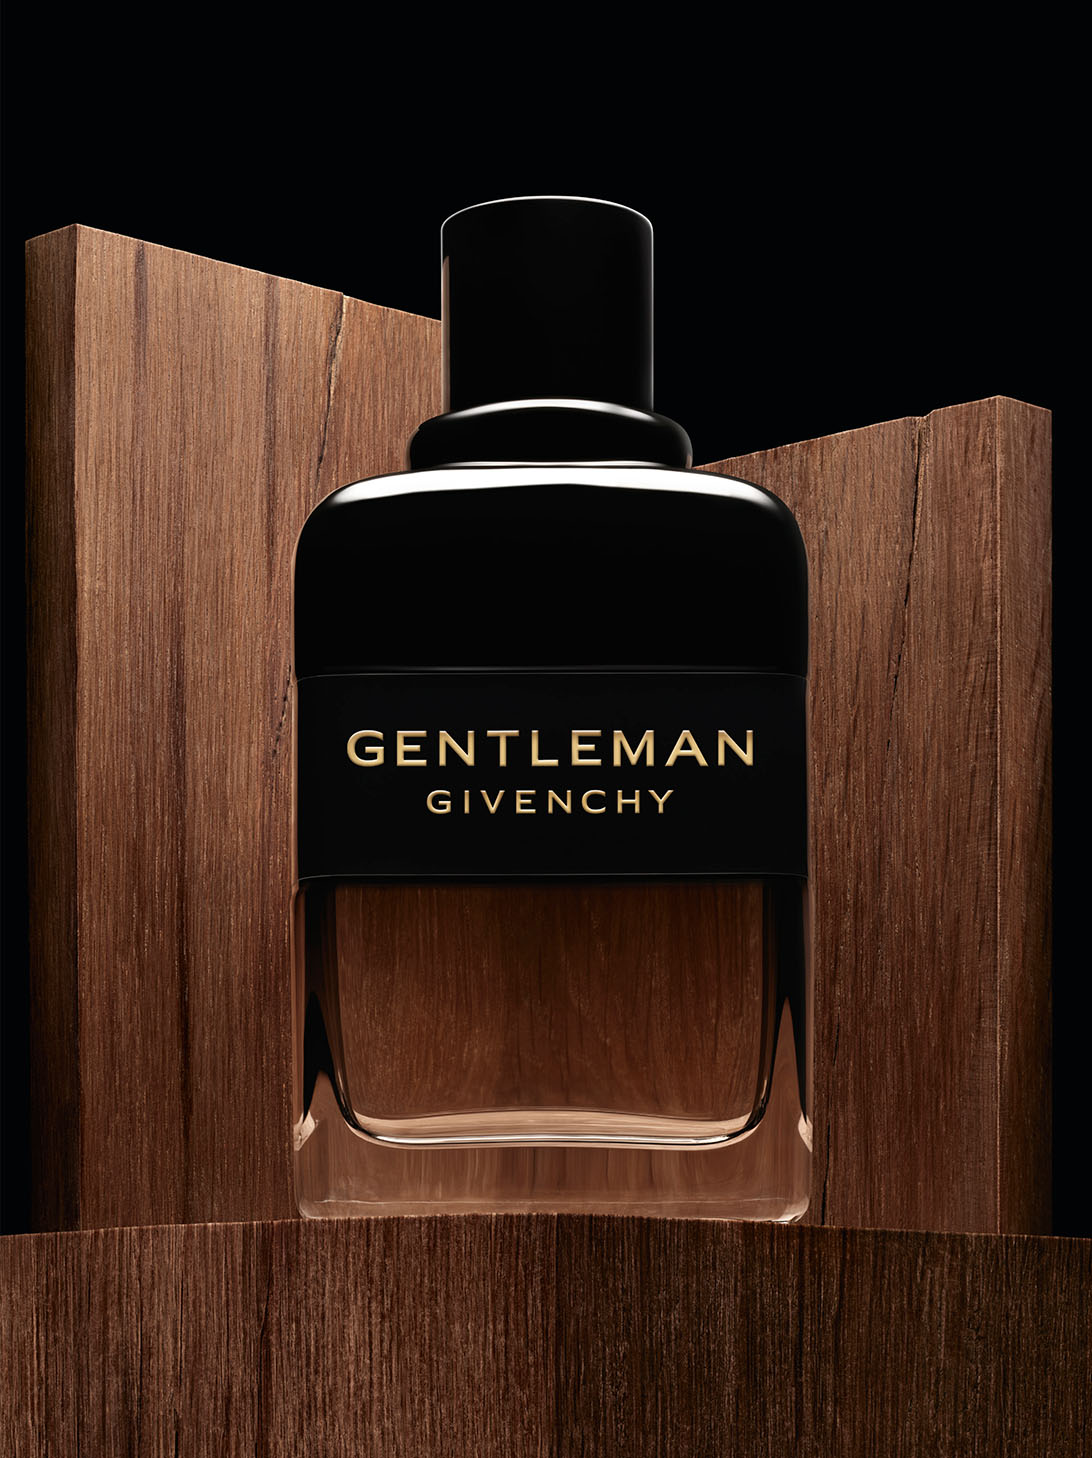 Gentleman Givenchy - Eau de parfum boisée woody, floral, spicy